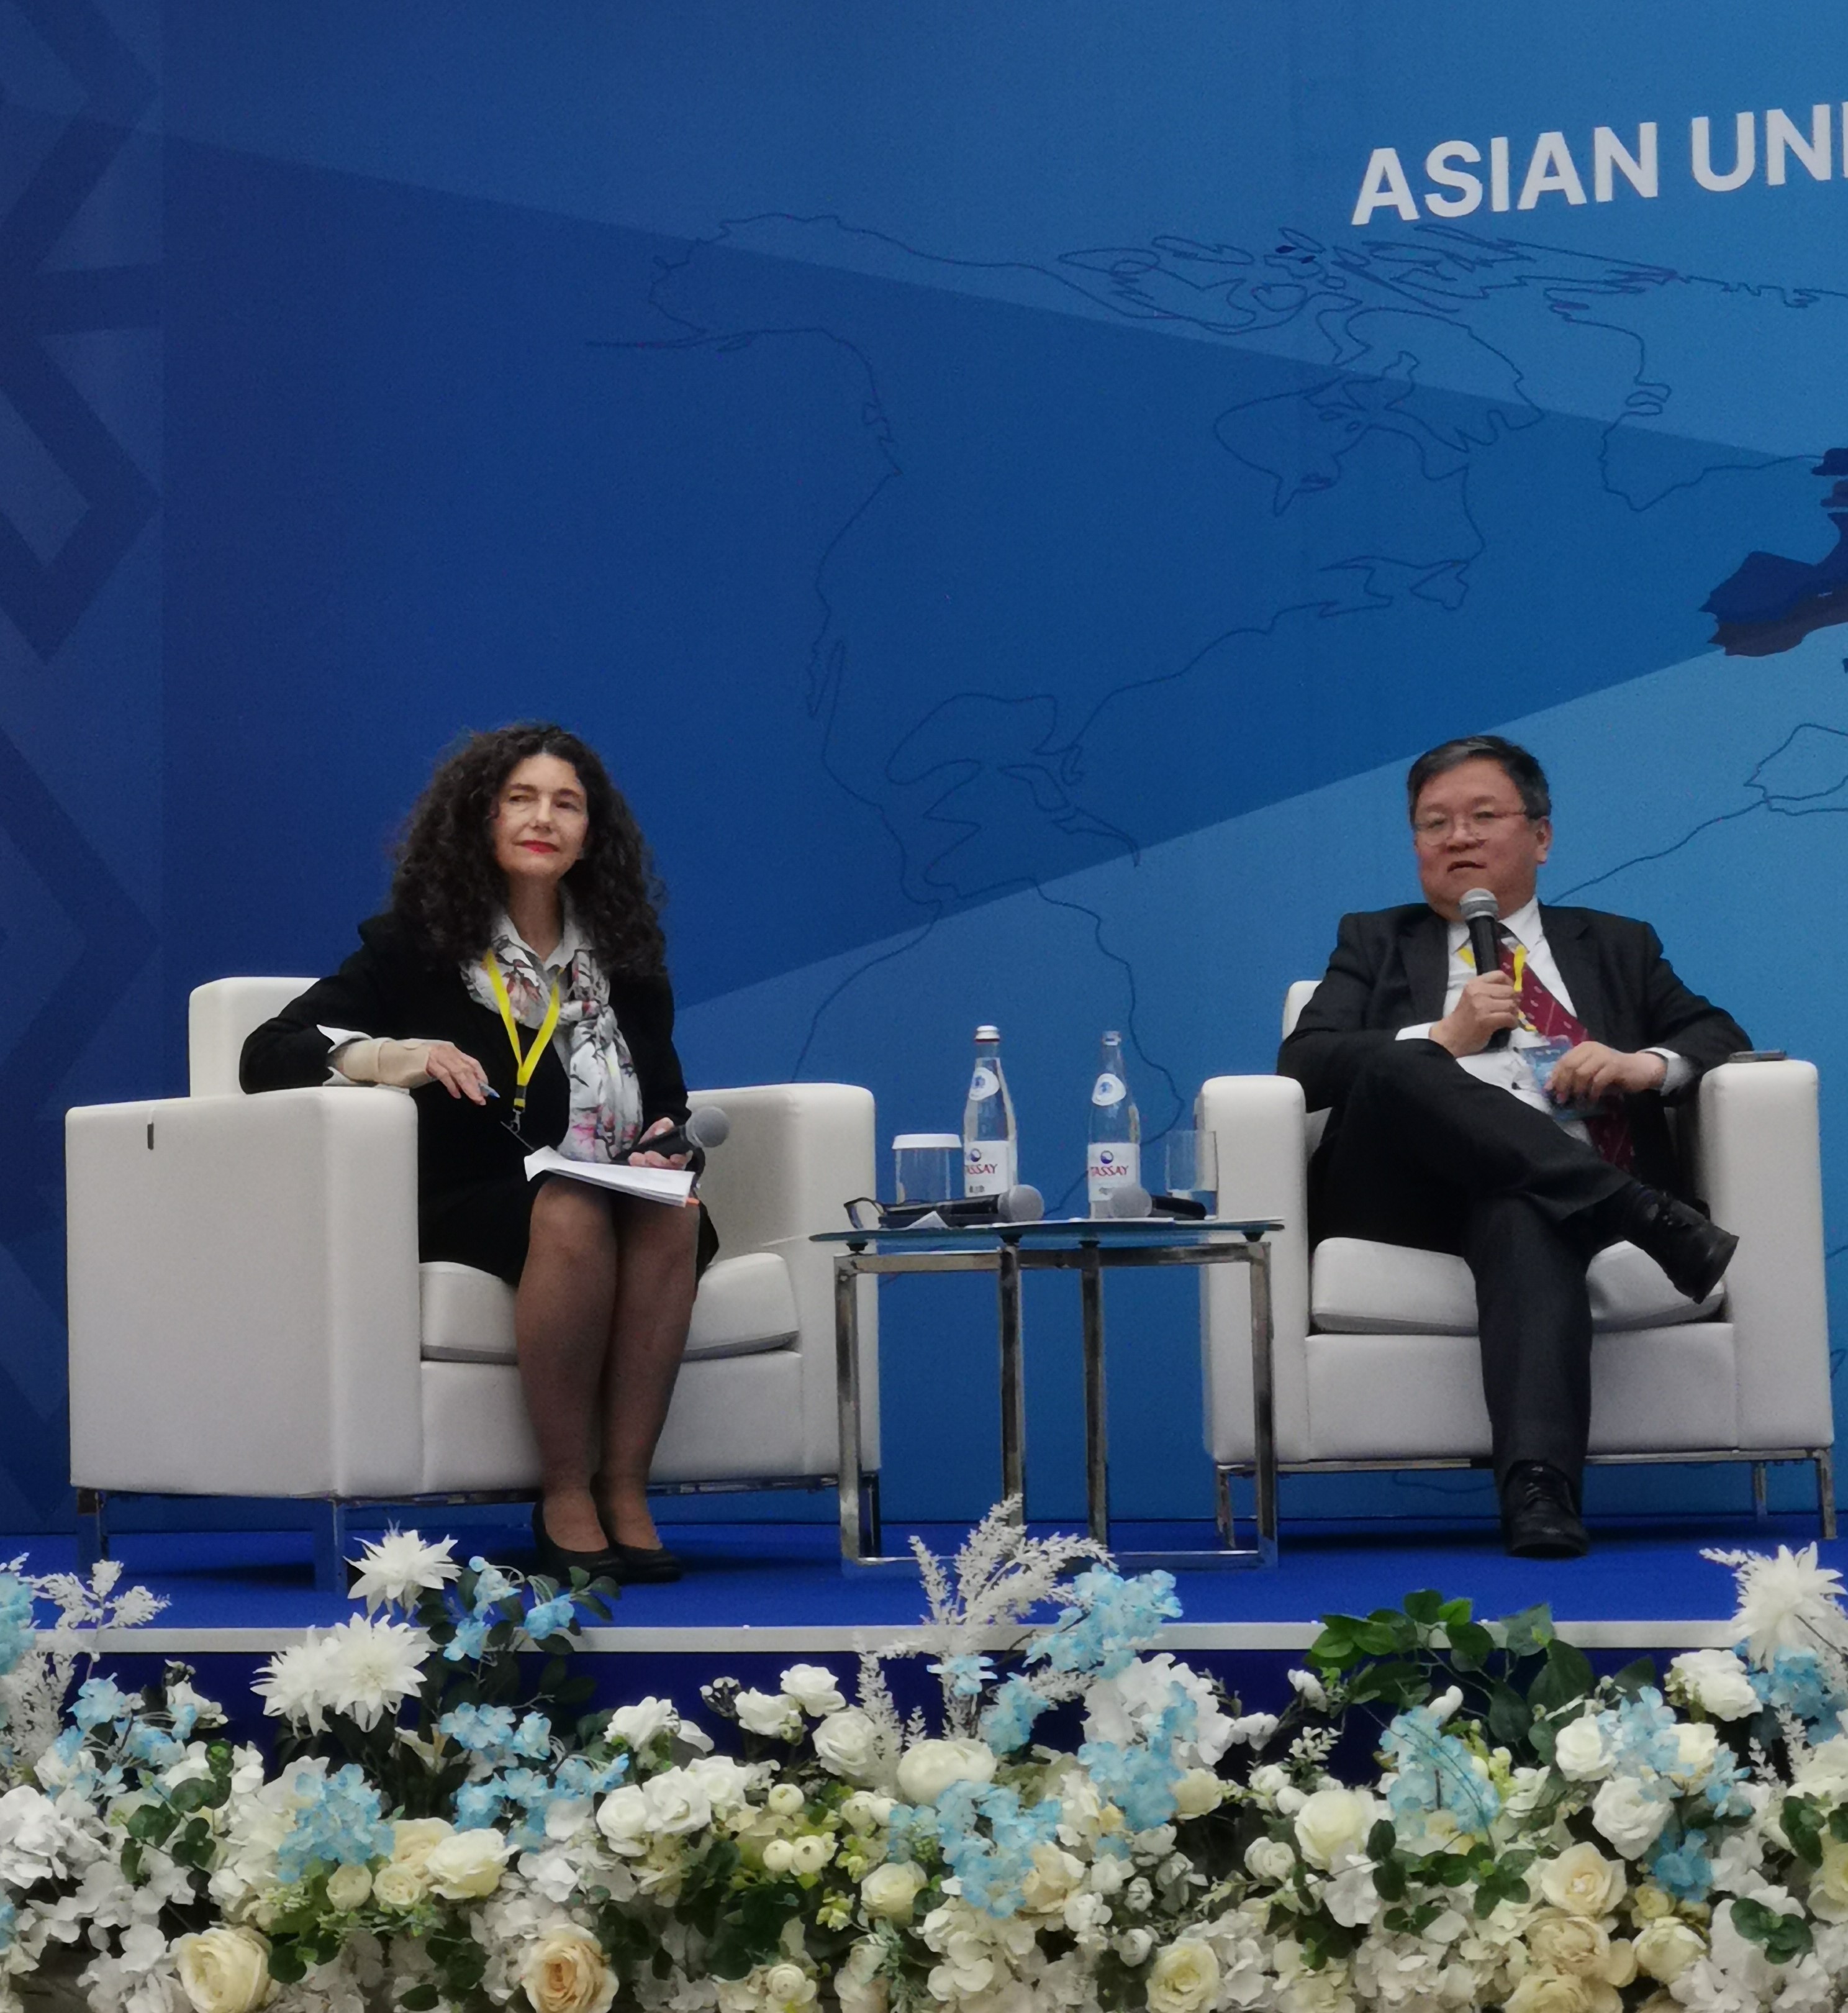 科大首席副校長郭毅可教授在2023年亞洲大學聯盟校長論壇上分享睿見。